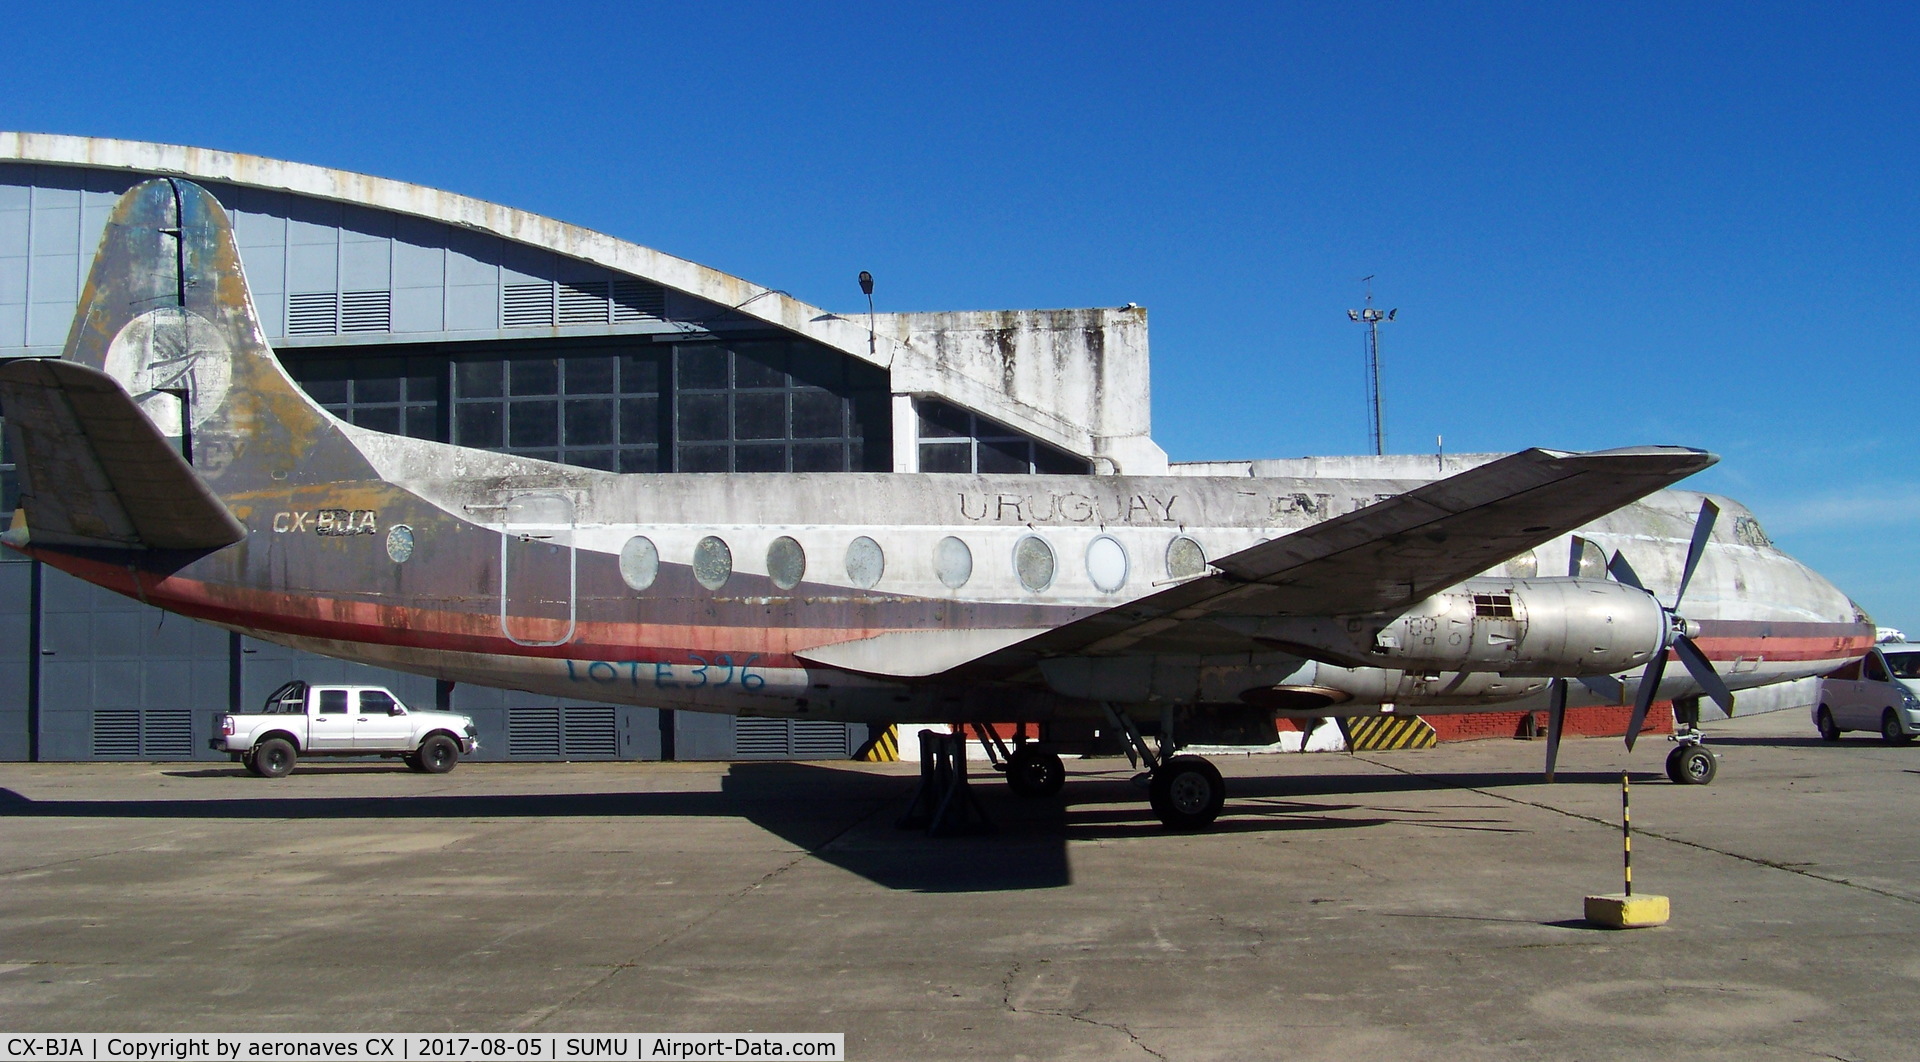 CX-BJA, 1958 Vickers Viscount 827 C/N 400, Preservado para restauración en el Museo Aeronáutico Cnel. Jaime Meregalli.